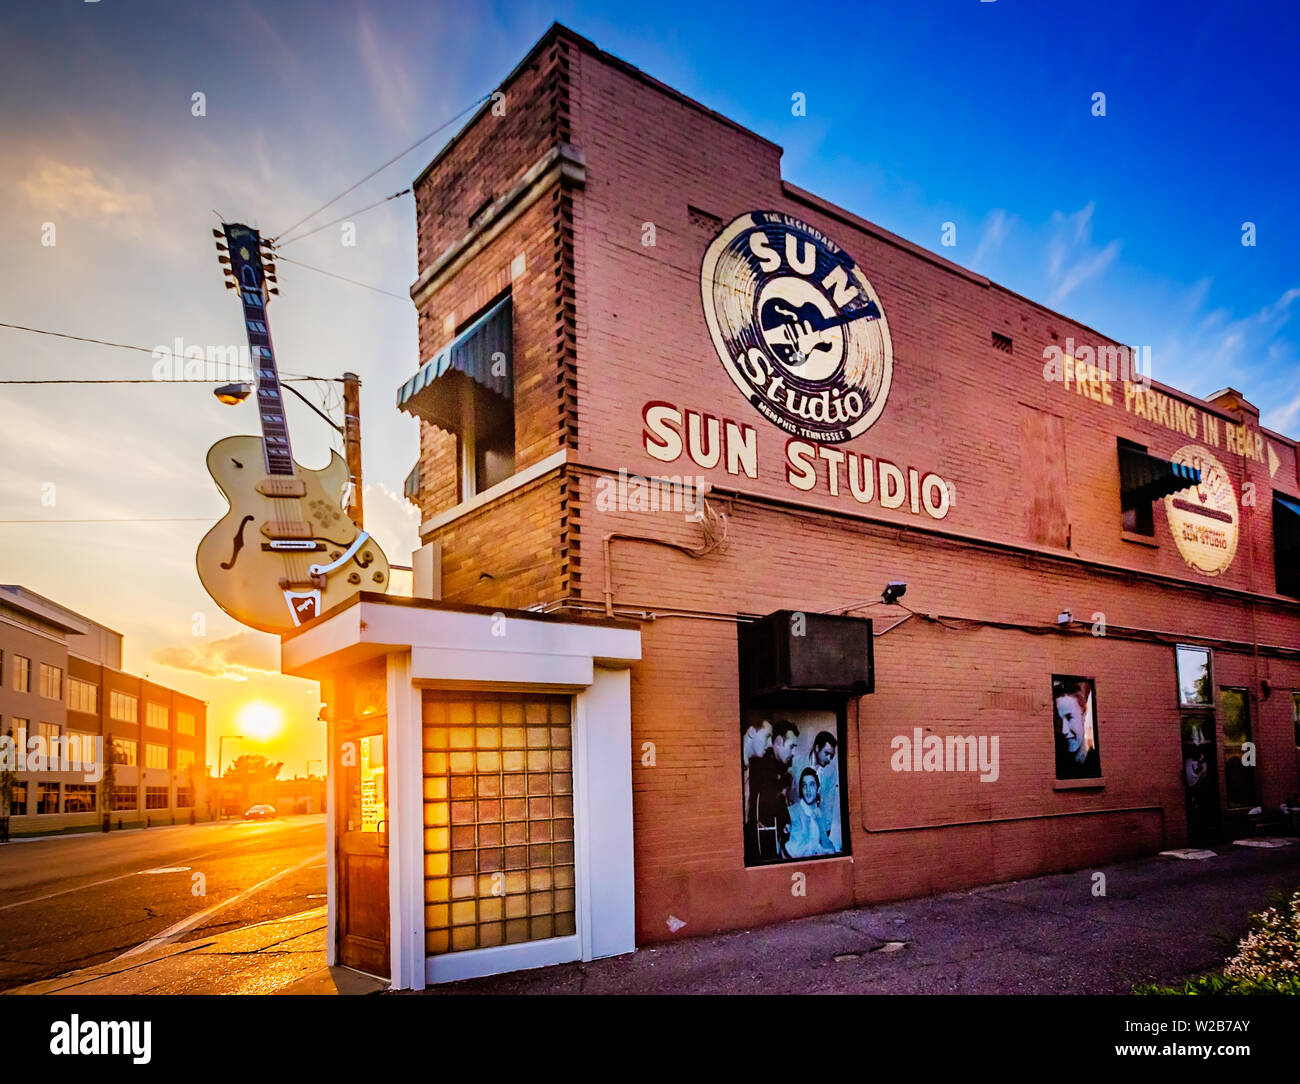 Il sole tramonta su Sun Studio, Sett. 6, 2015. Lo studio di registrazione ed etichetta discografica sono stati resi famosi da cantanti come Elvis Presley e Johnny Cash. Foto Stock